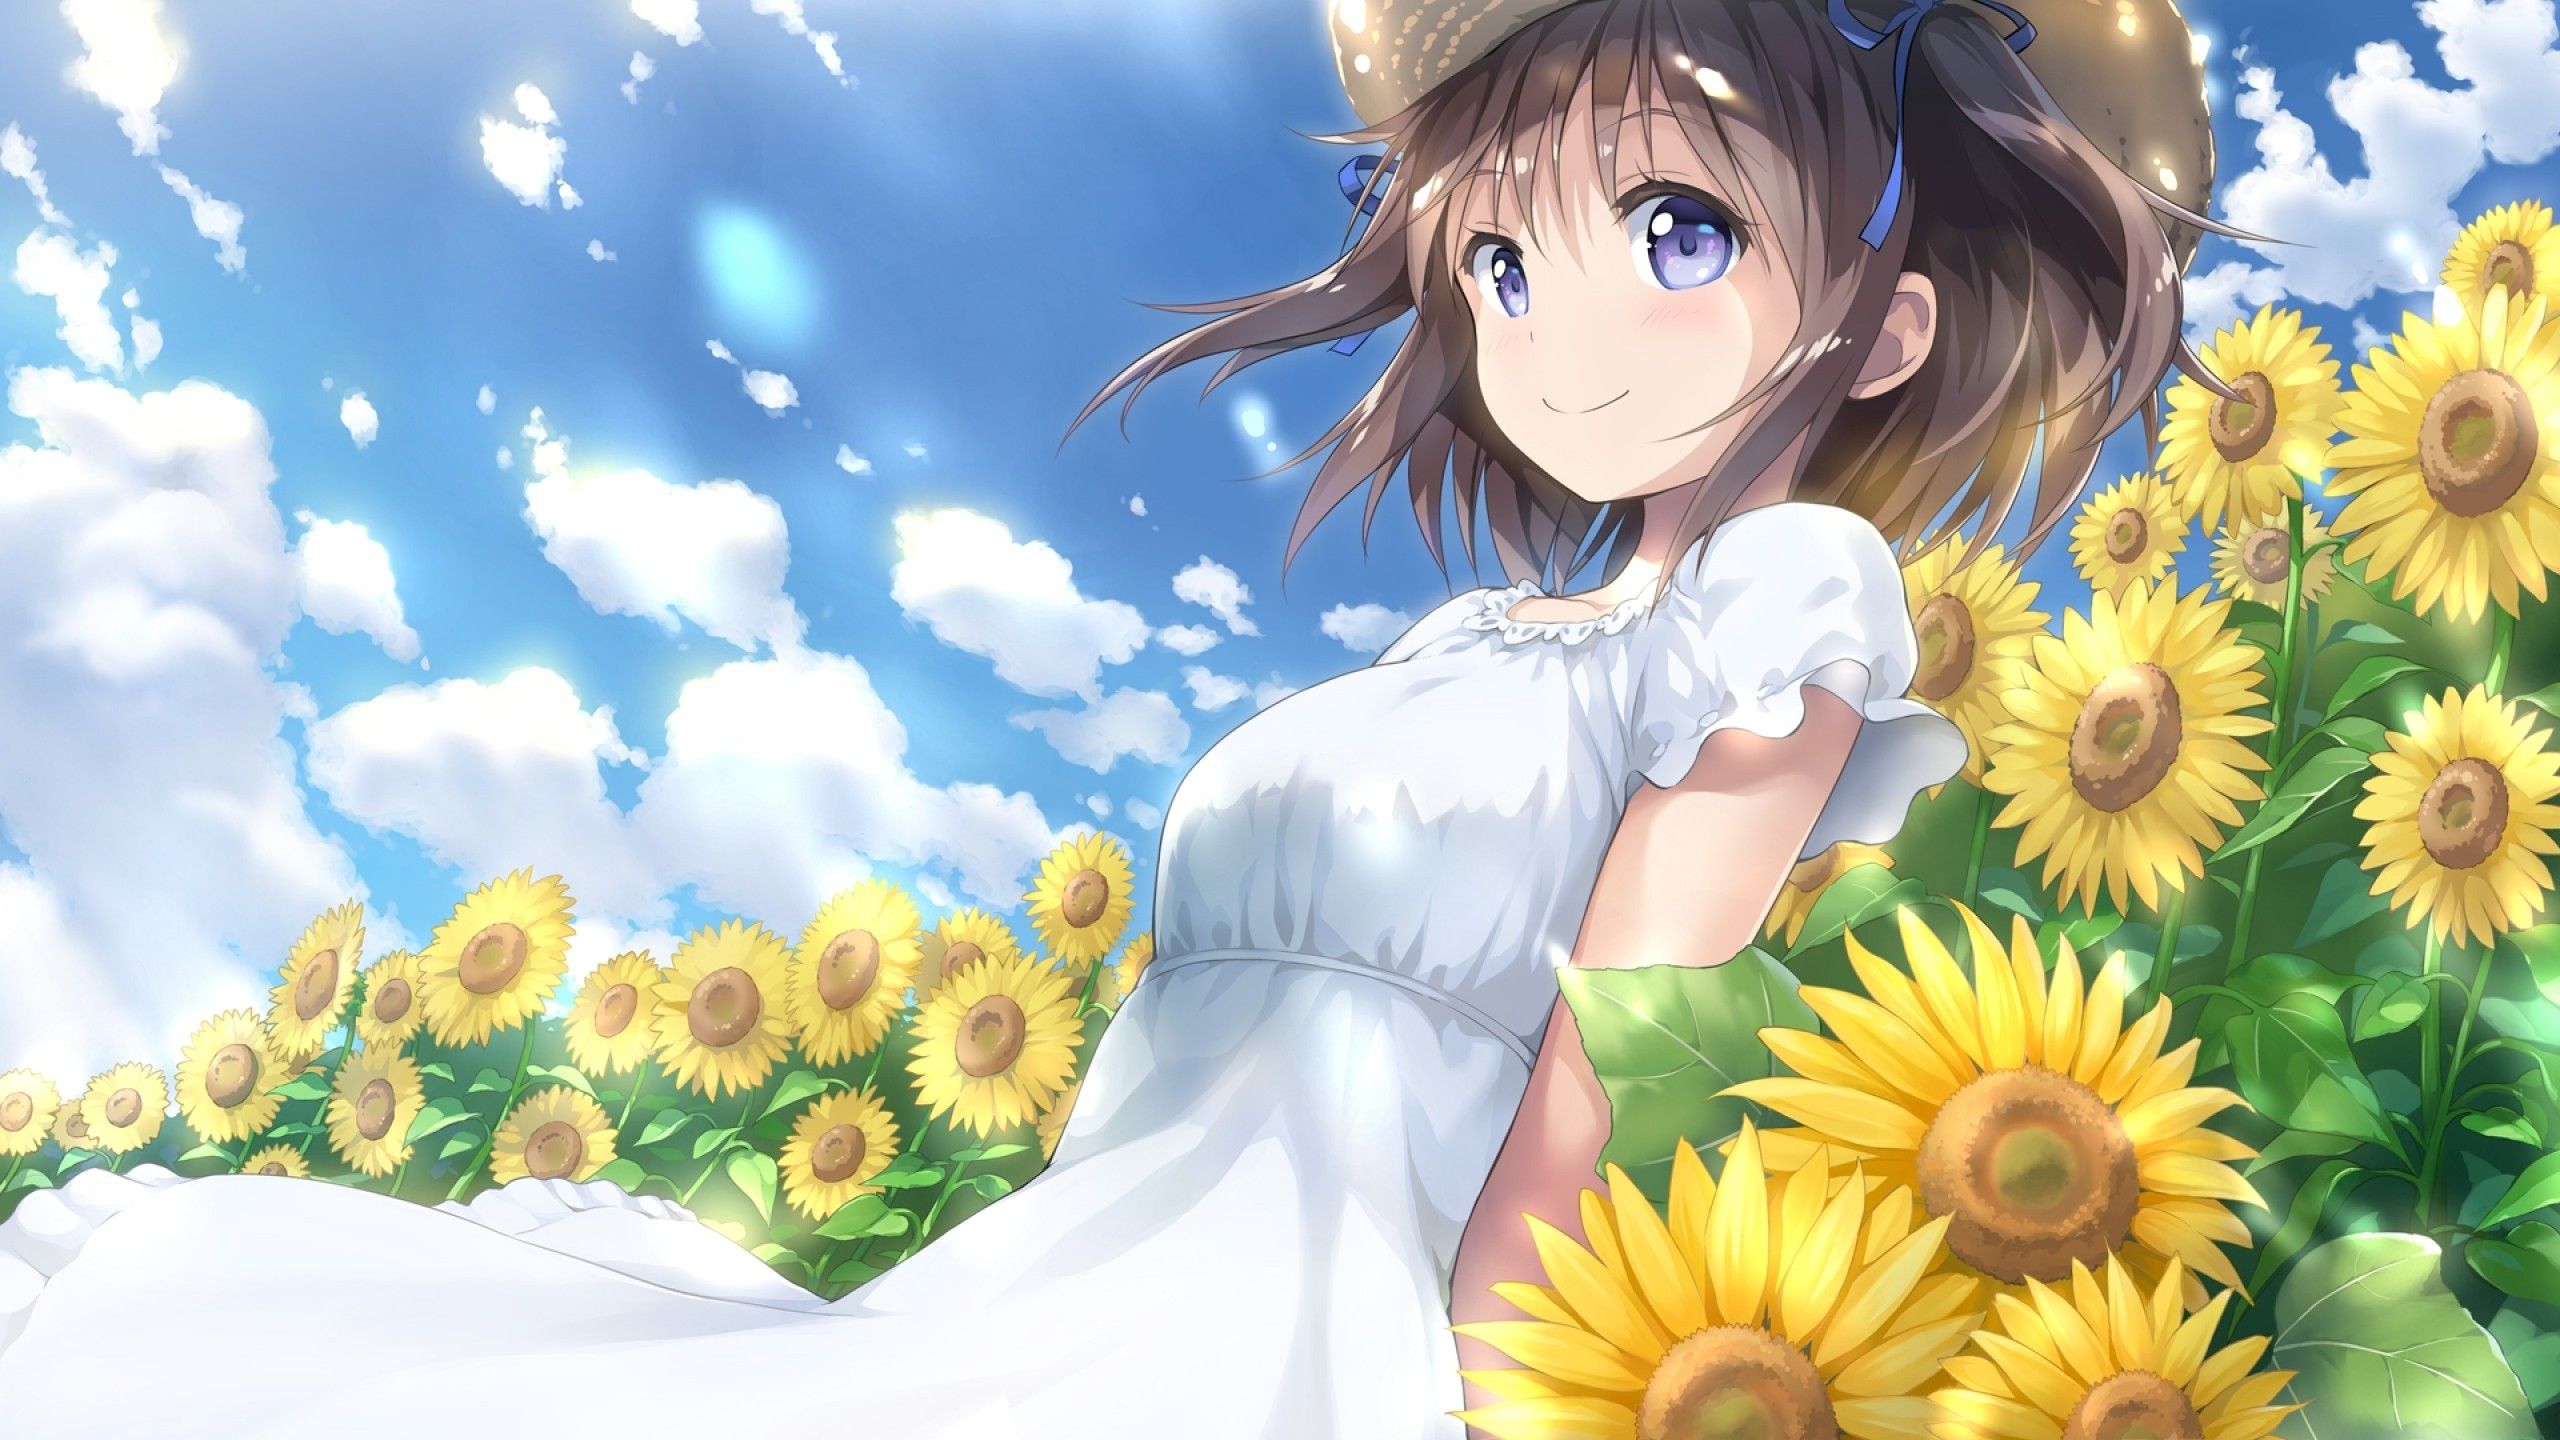 Download 2560x1440 Sunflowers, Summer, Dress, Short Hair, Anime